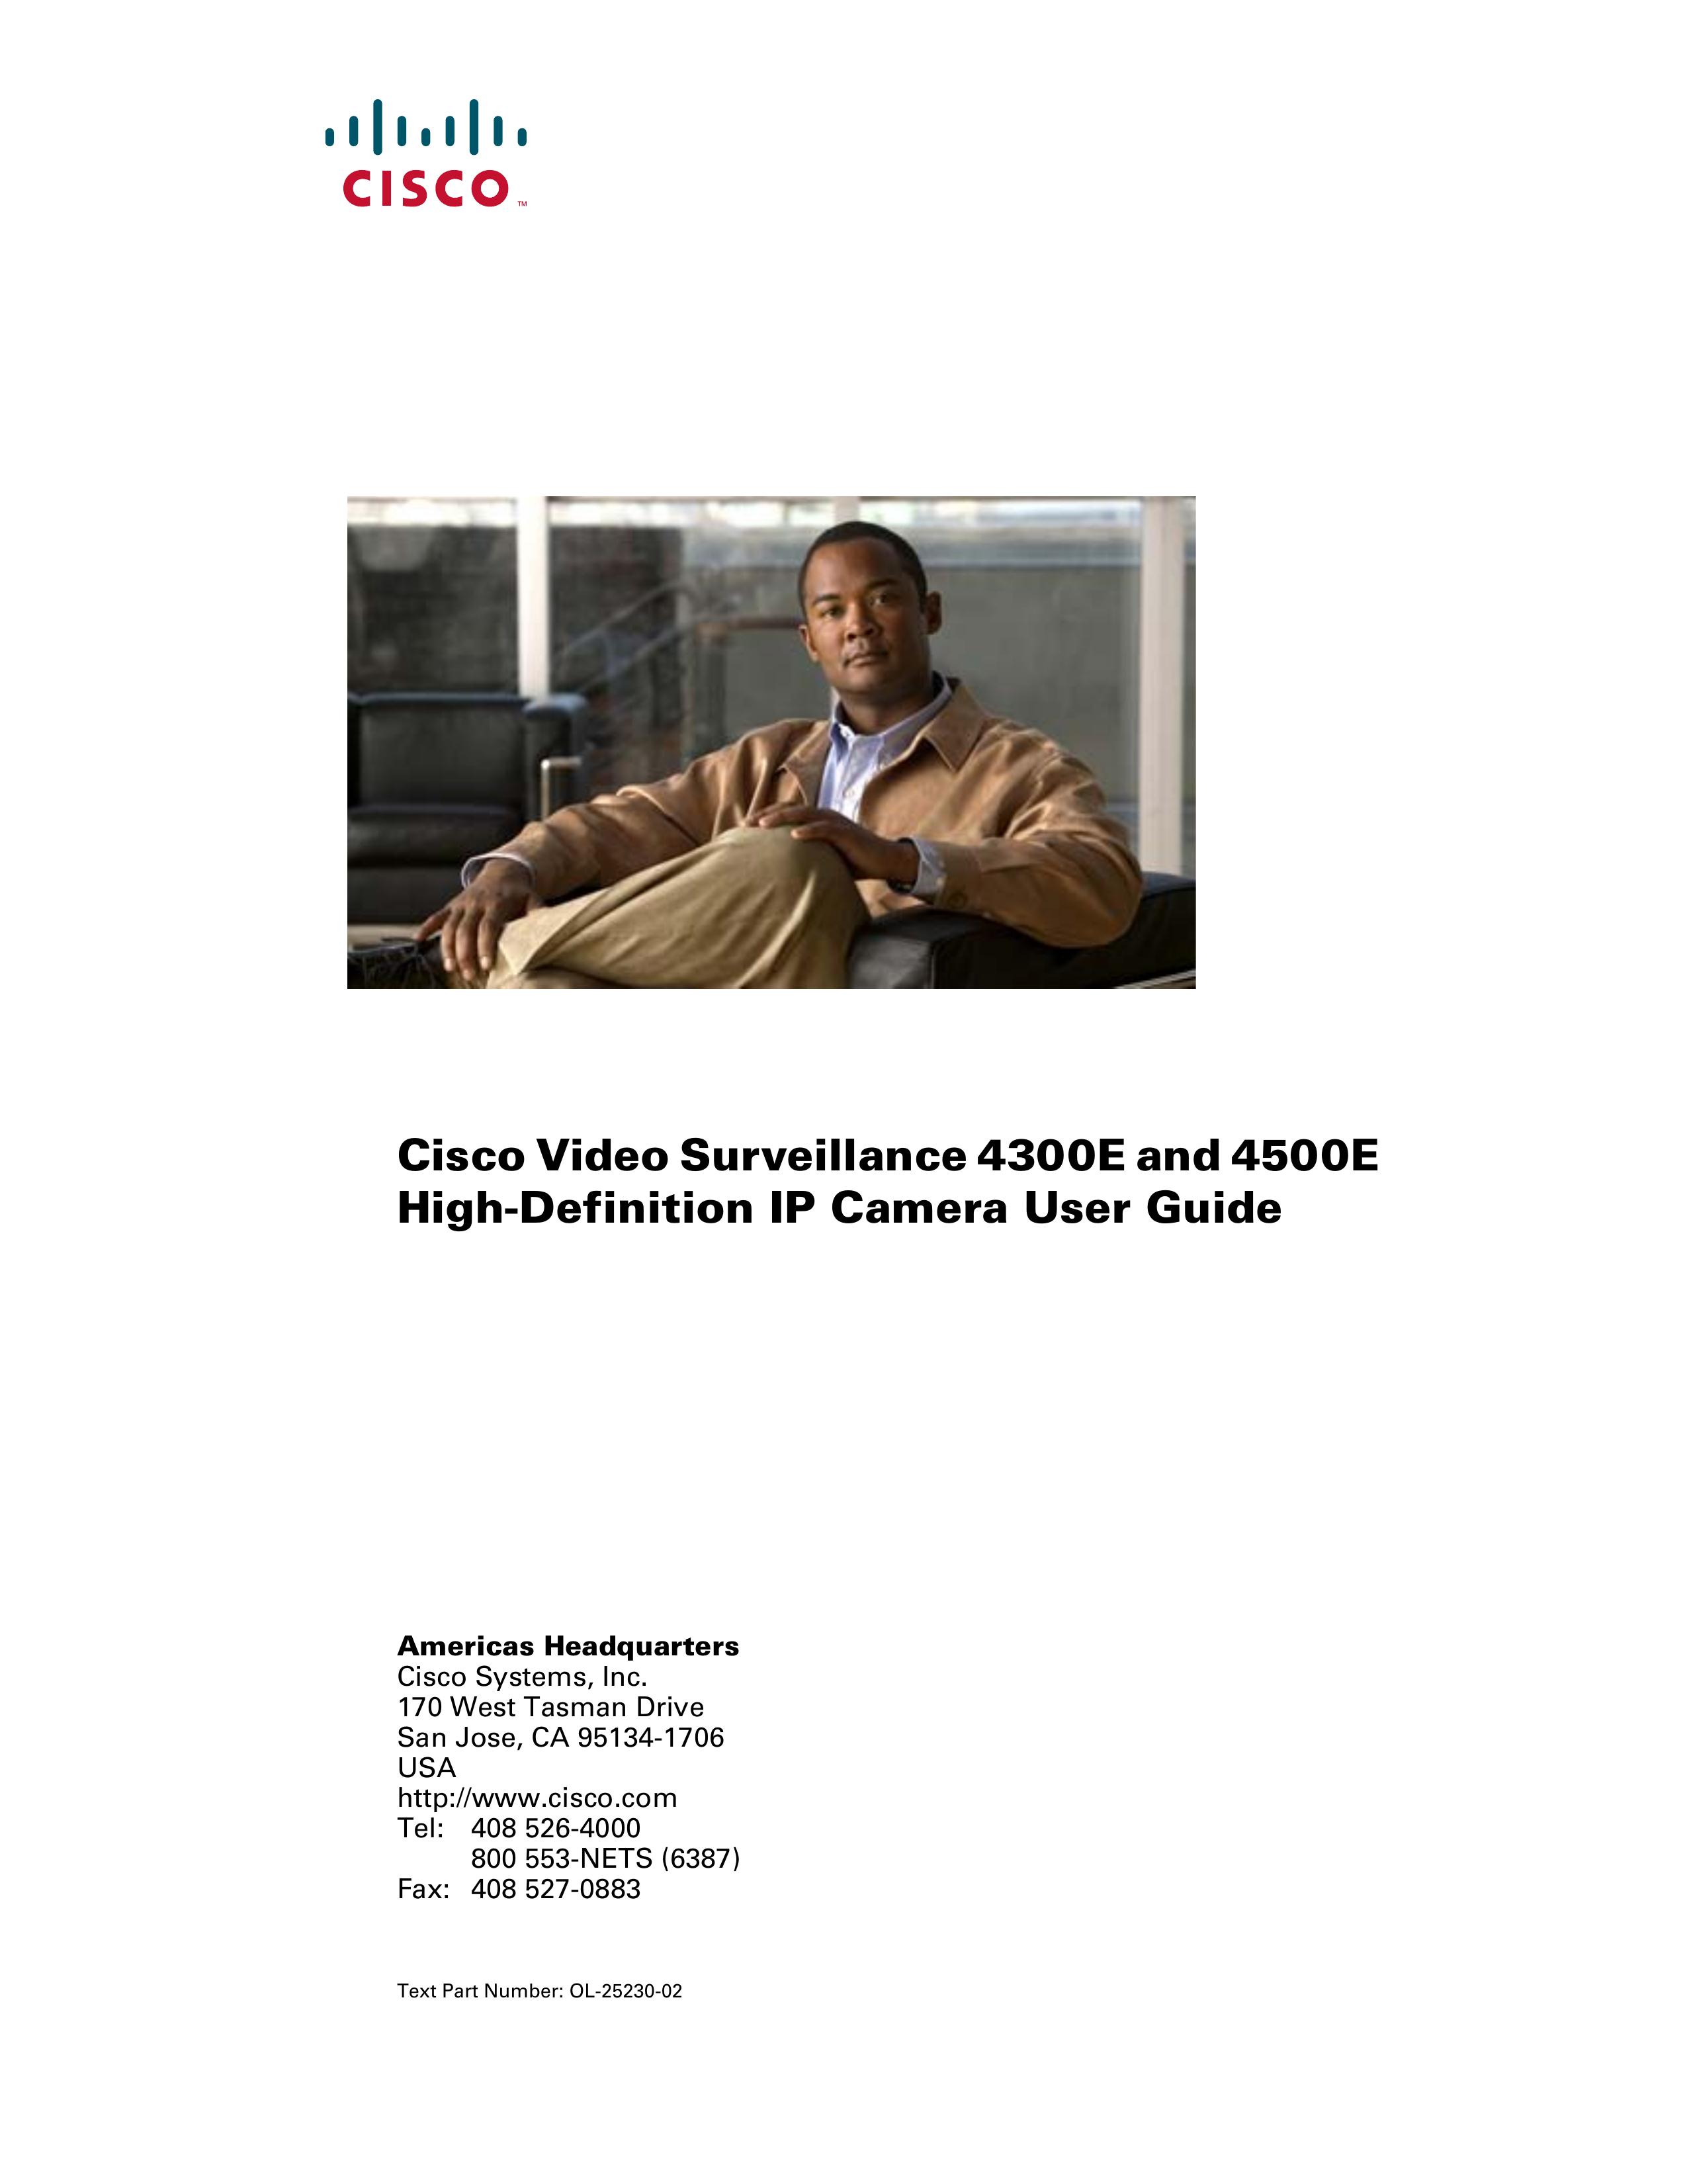 Cisco Systems 4300E Security Camera User Manual